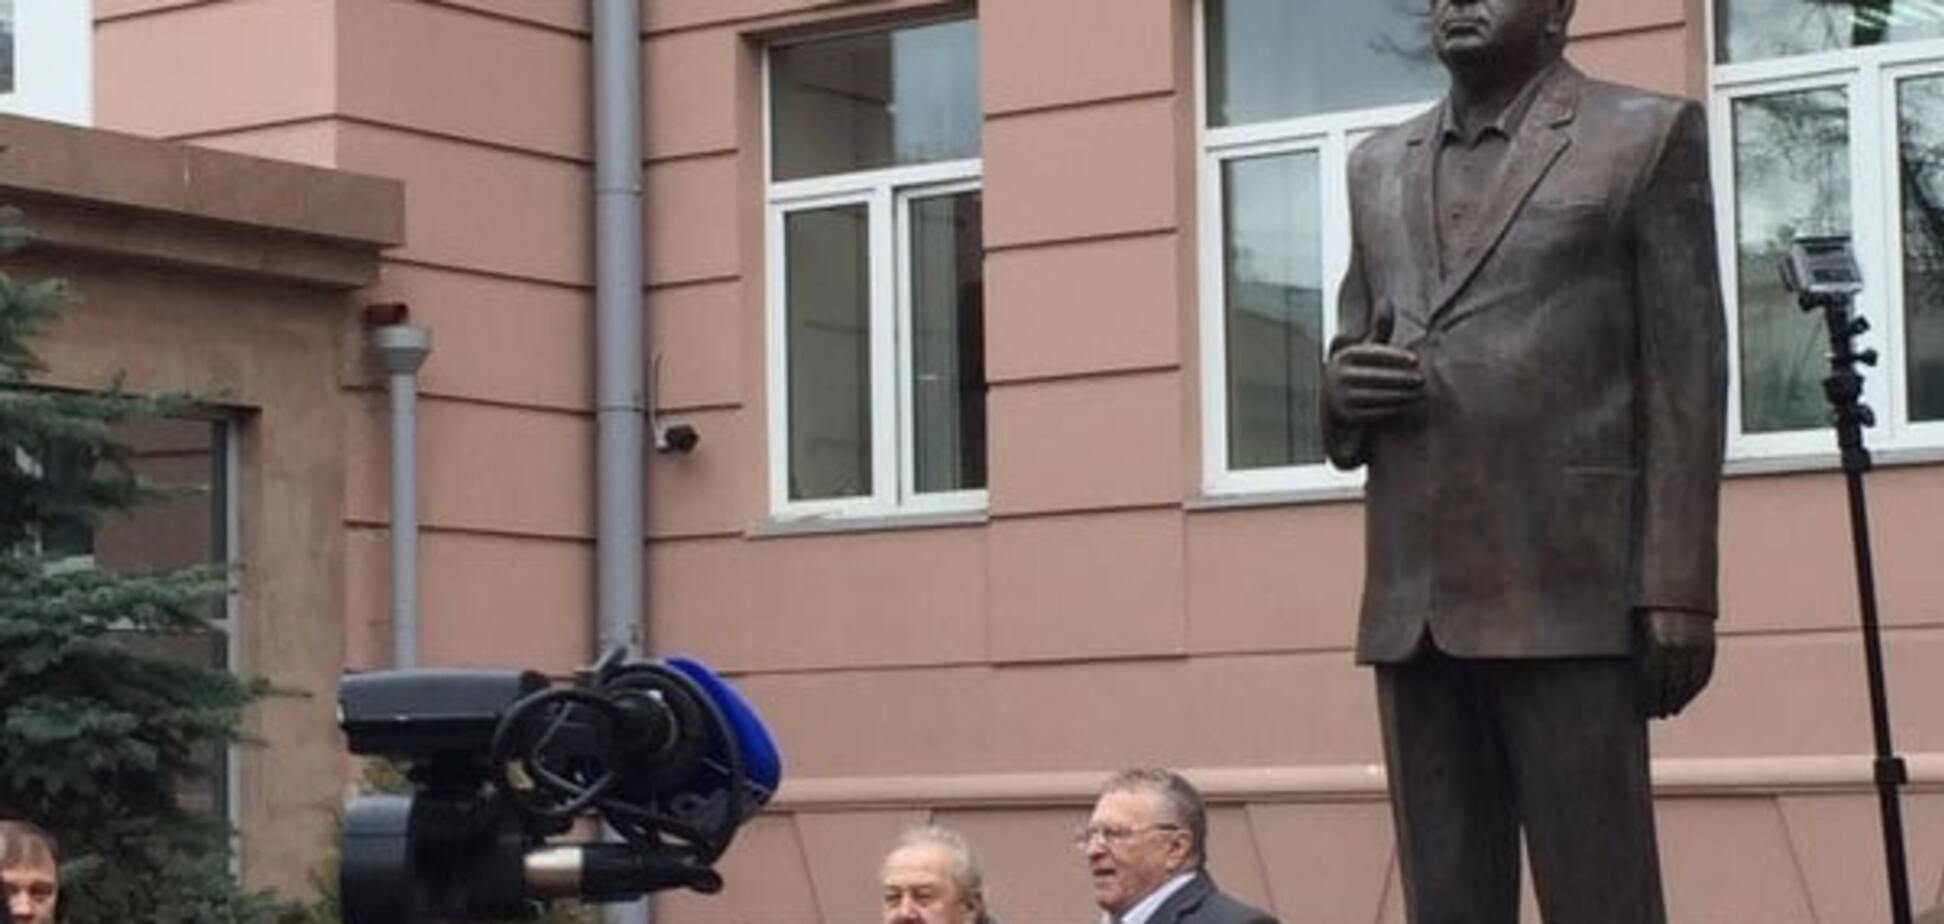 'Рівень гидоти і вульгарності зашкалює': в Москві встановили пам'ятник Жириновському. Фотофакт